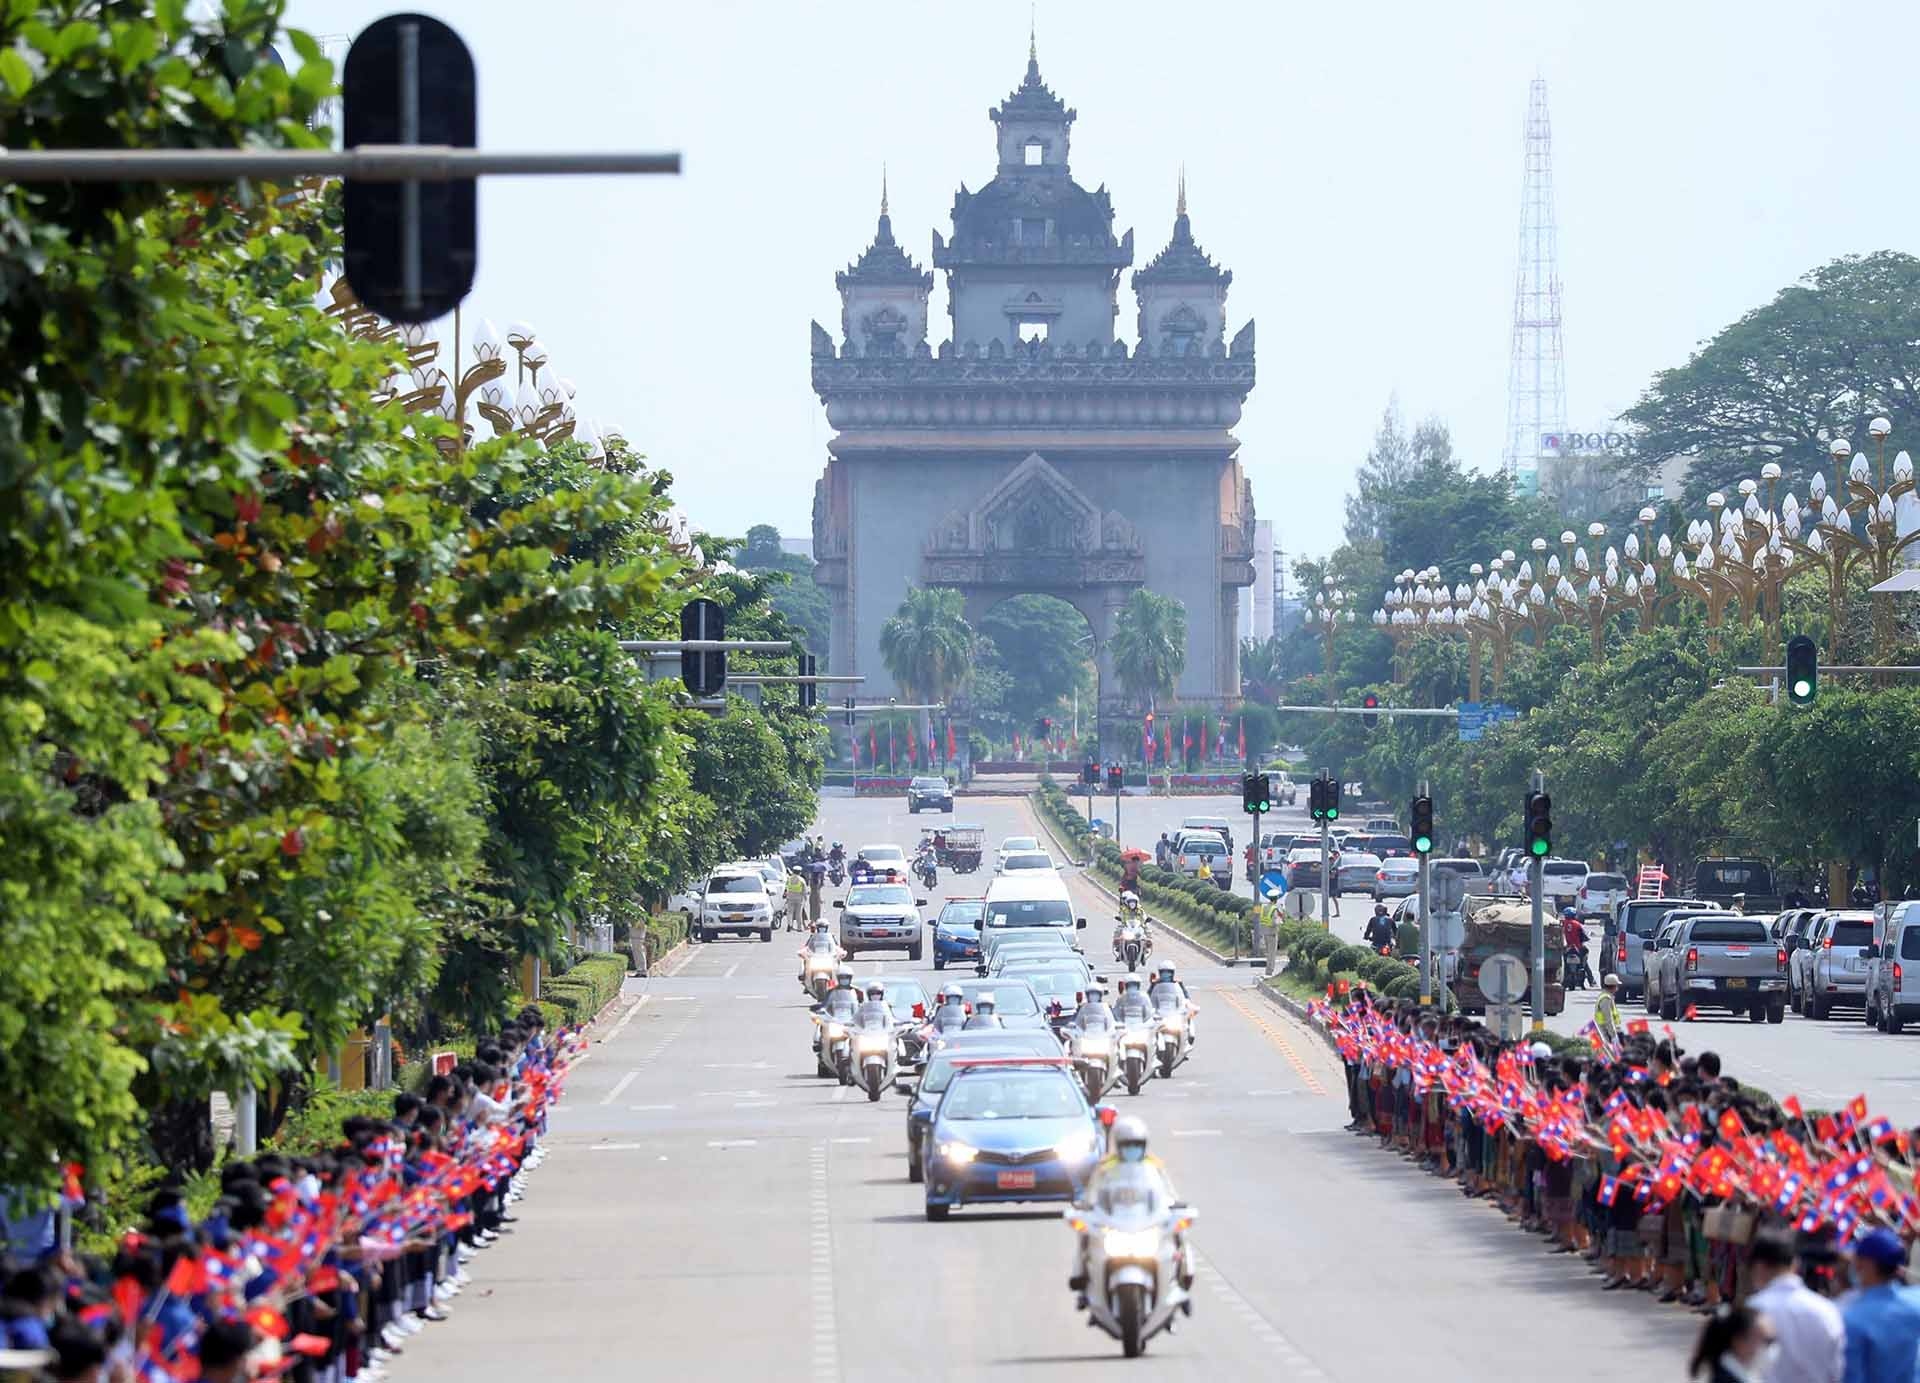 Hàng trăm người dân Thủ đô Vientiane trong những bộ trang phục truyền thống của nhân dân các bộ tộc Lào với cờ hai nước và những bông hoa rực rỡ trên tay đứng dọc 2 bên đại lộ dẫn vào Phủ Chủ tịch, nồng nhiệt chào mừng Chủ tịch nước Nguyễn Xuân Phúc và Phu nhân thăm hữu nghị chính thức Lào.